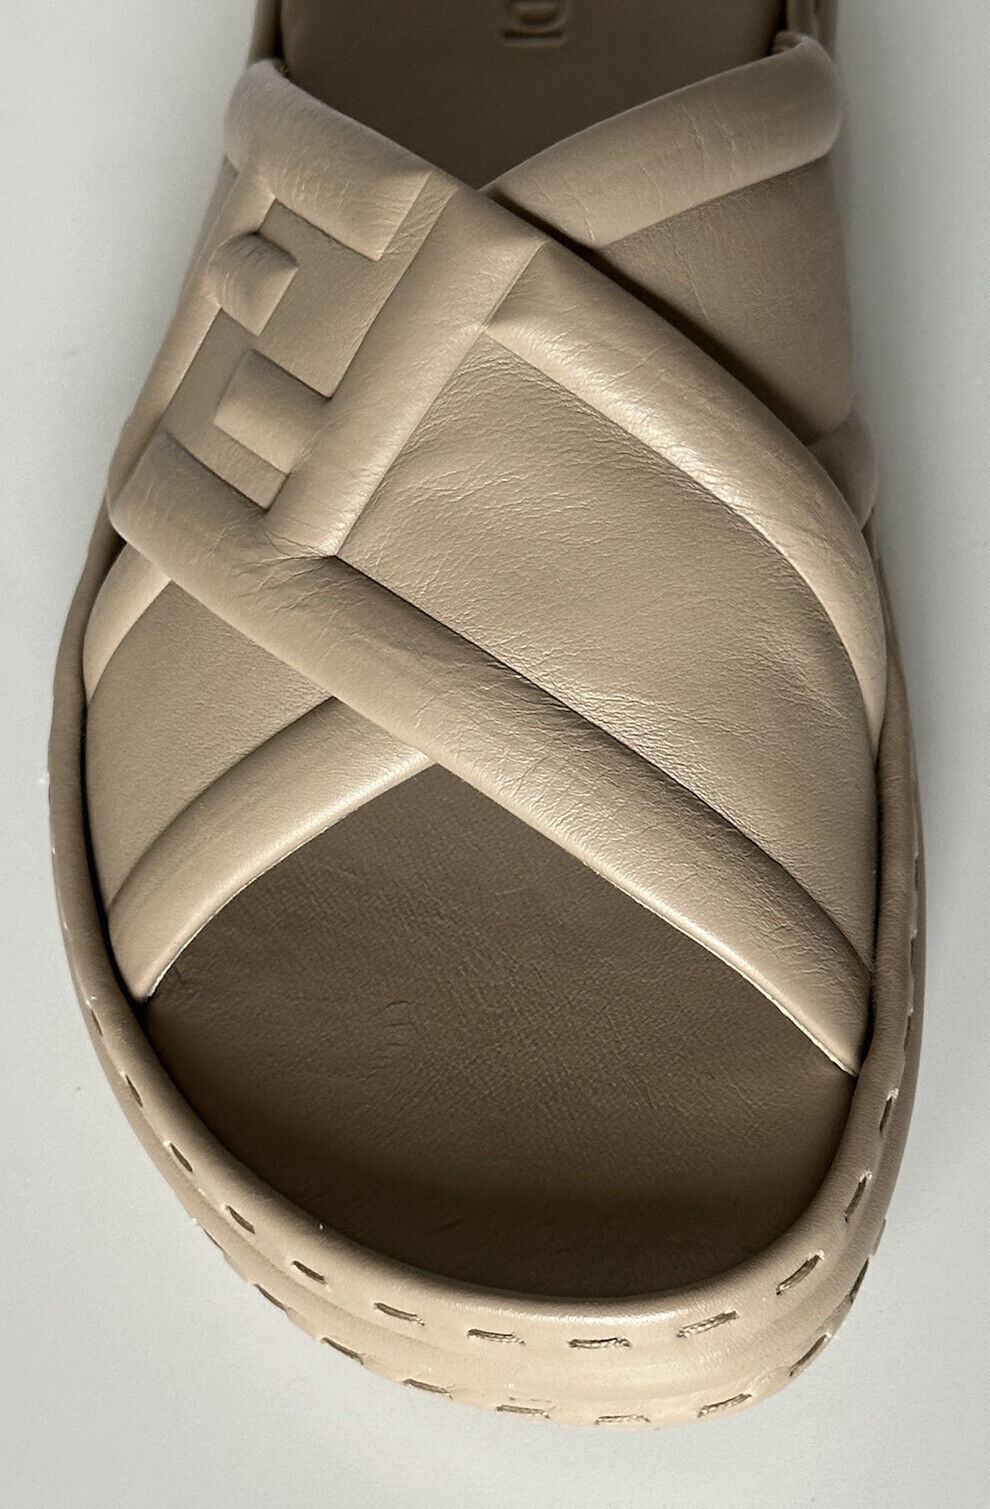 NIB $895 Fendi Men's FF Calf Leather Slide Sandals Beige 8 US/7UK 7X1501 IT